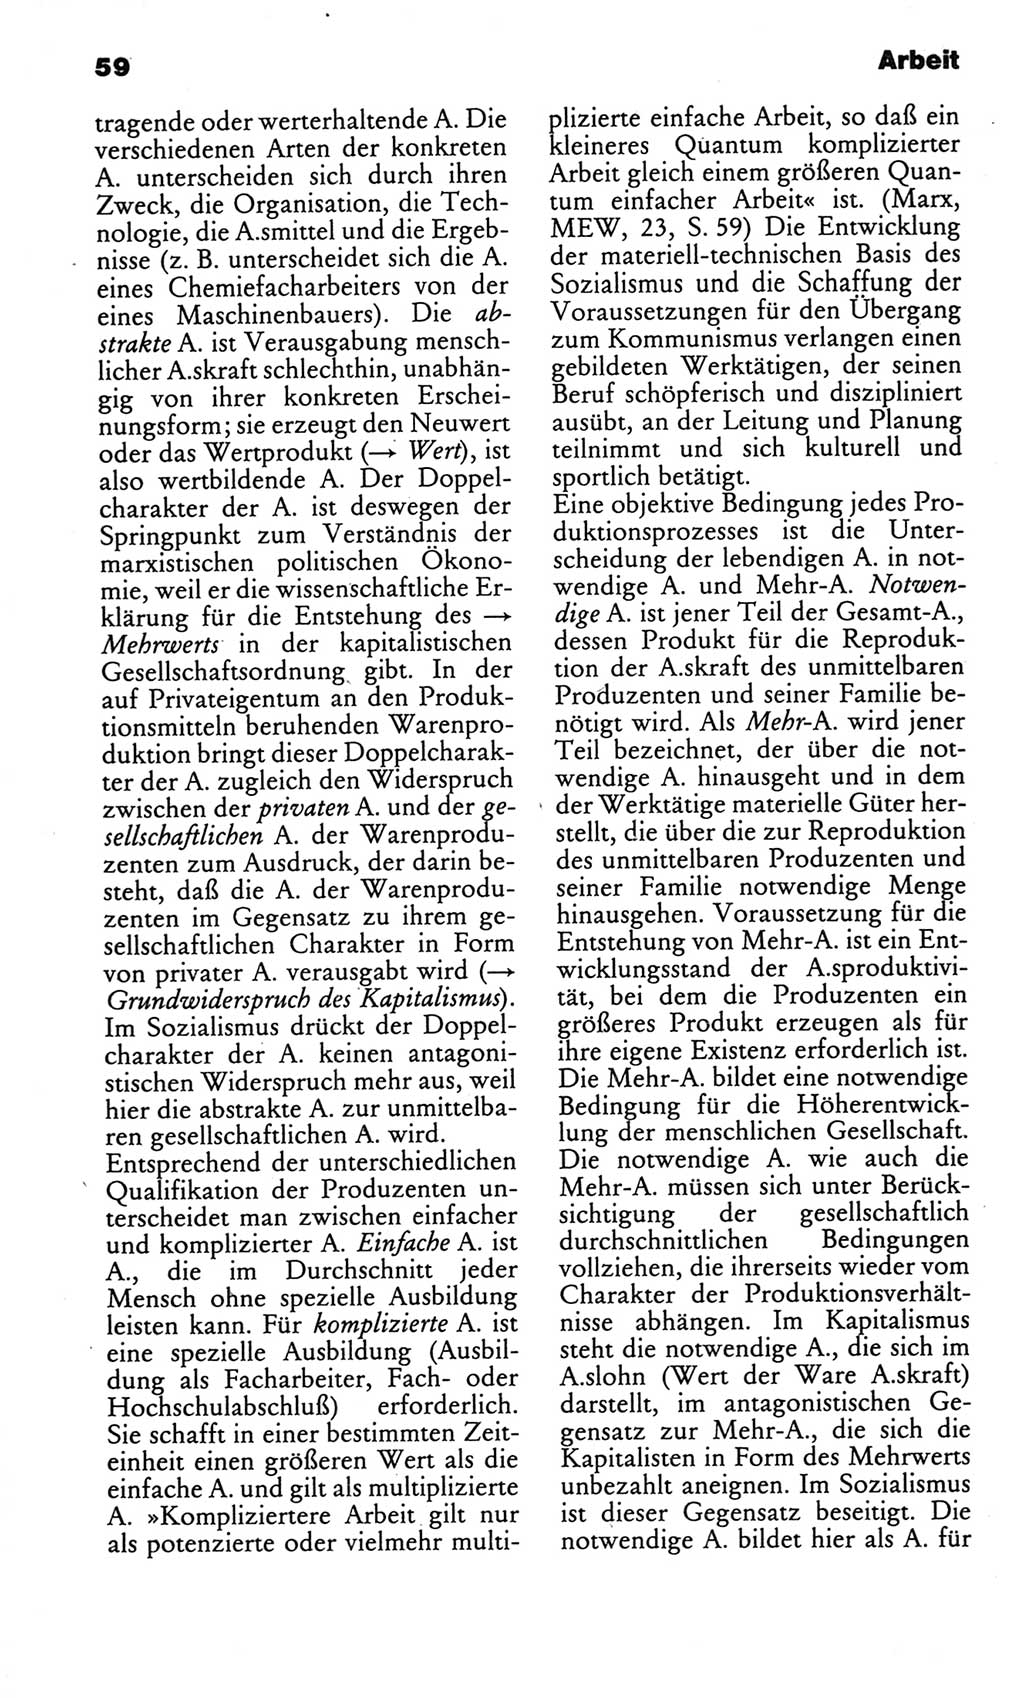 Kleines politisches Wörterbuch [Deutsche Demokratische Republik (DDR)] 1986, Seite 59 (Kl. pol. Wb. DDR 1986, S. 59)